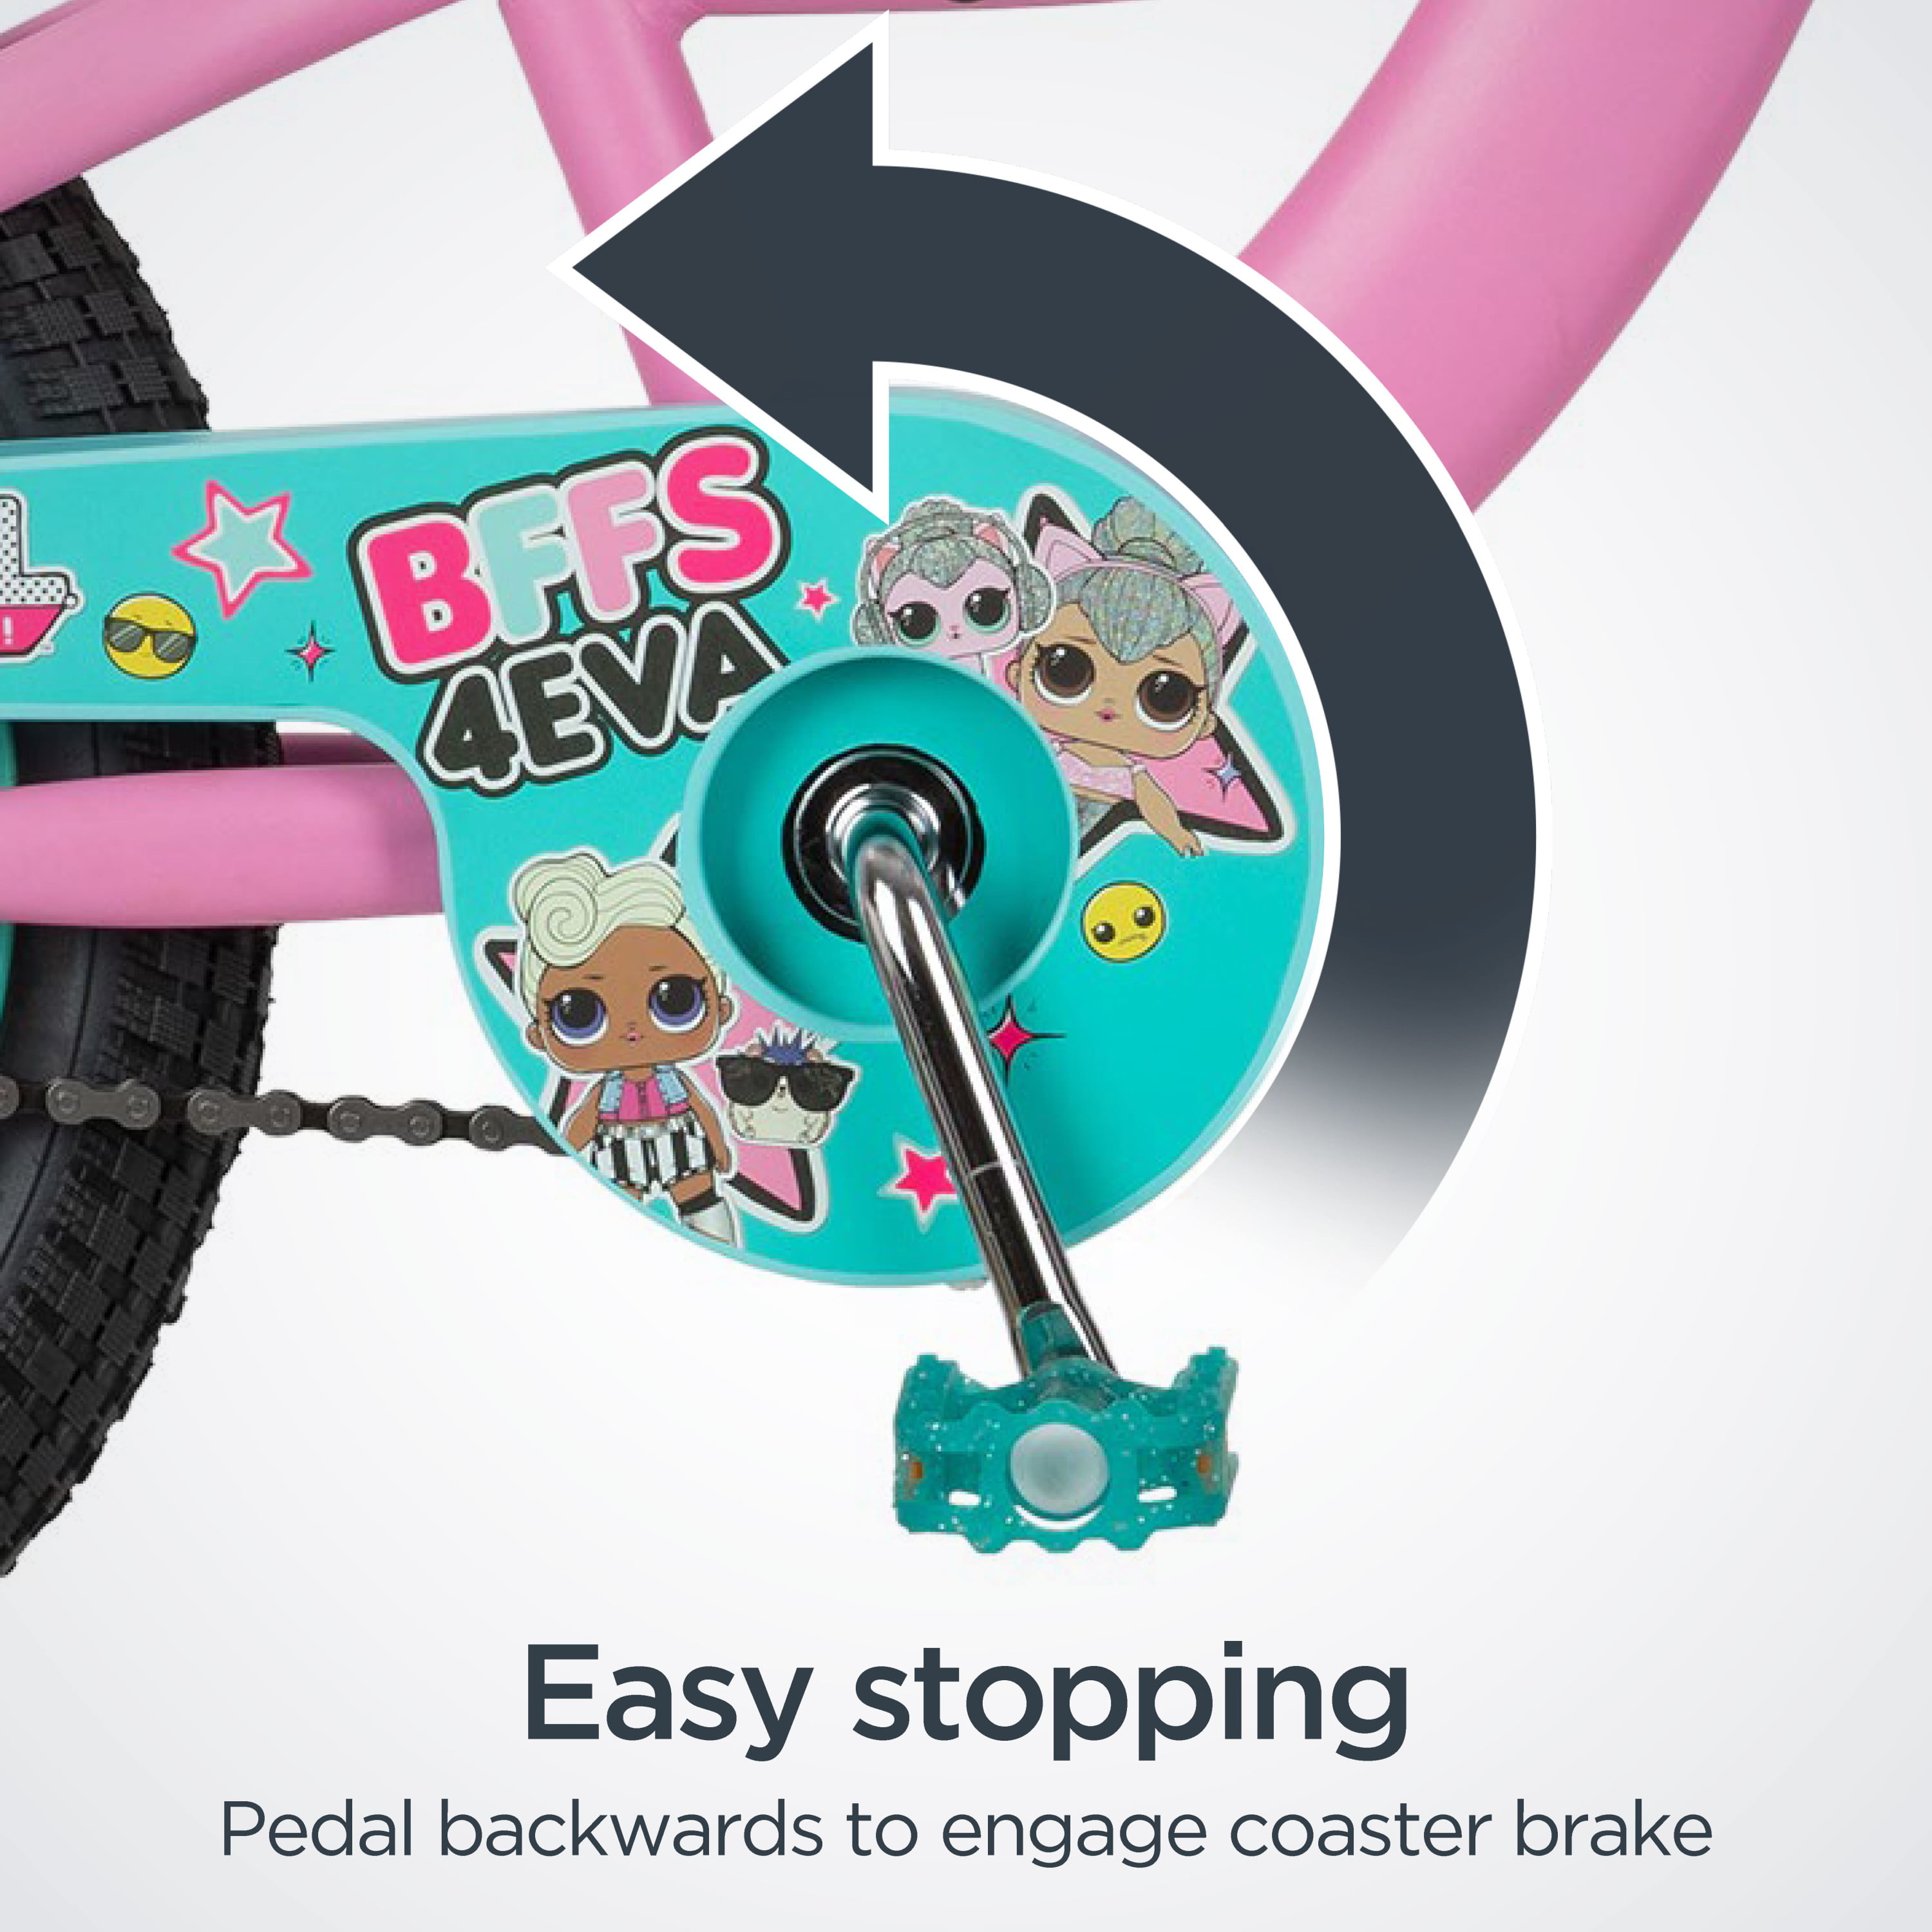 LOL Surprise kids bike single speed 16-inch wheel pink 